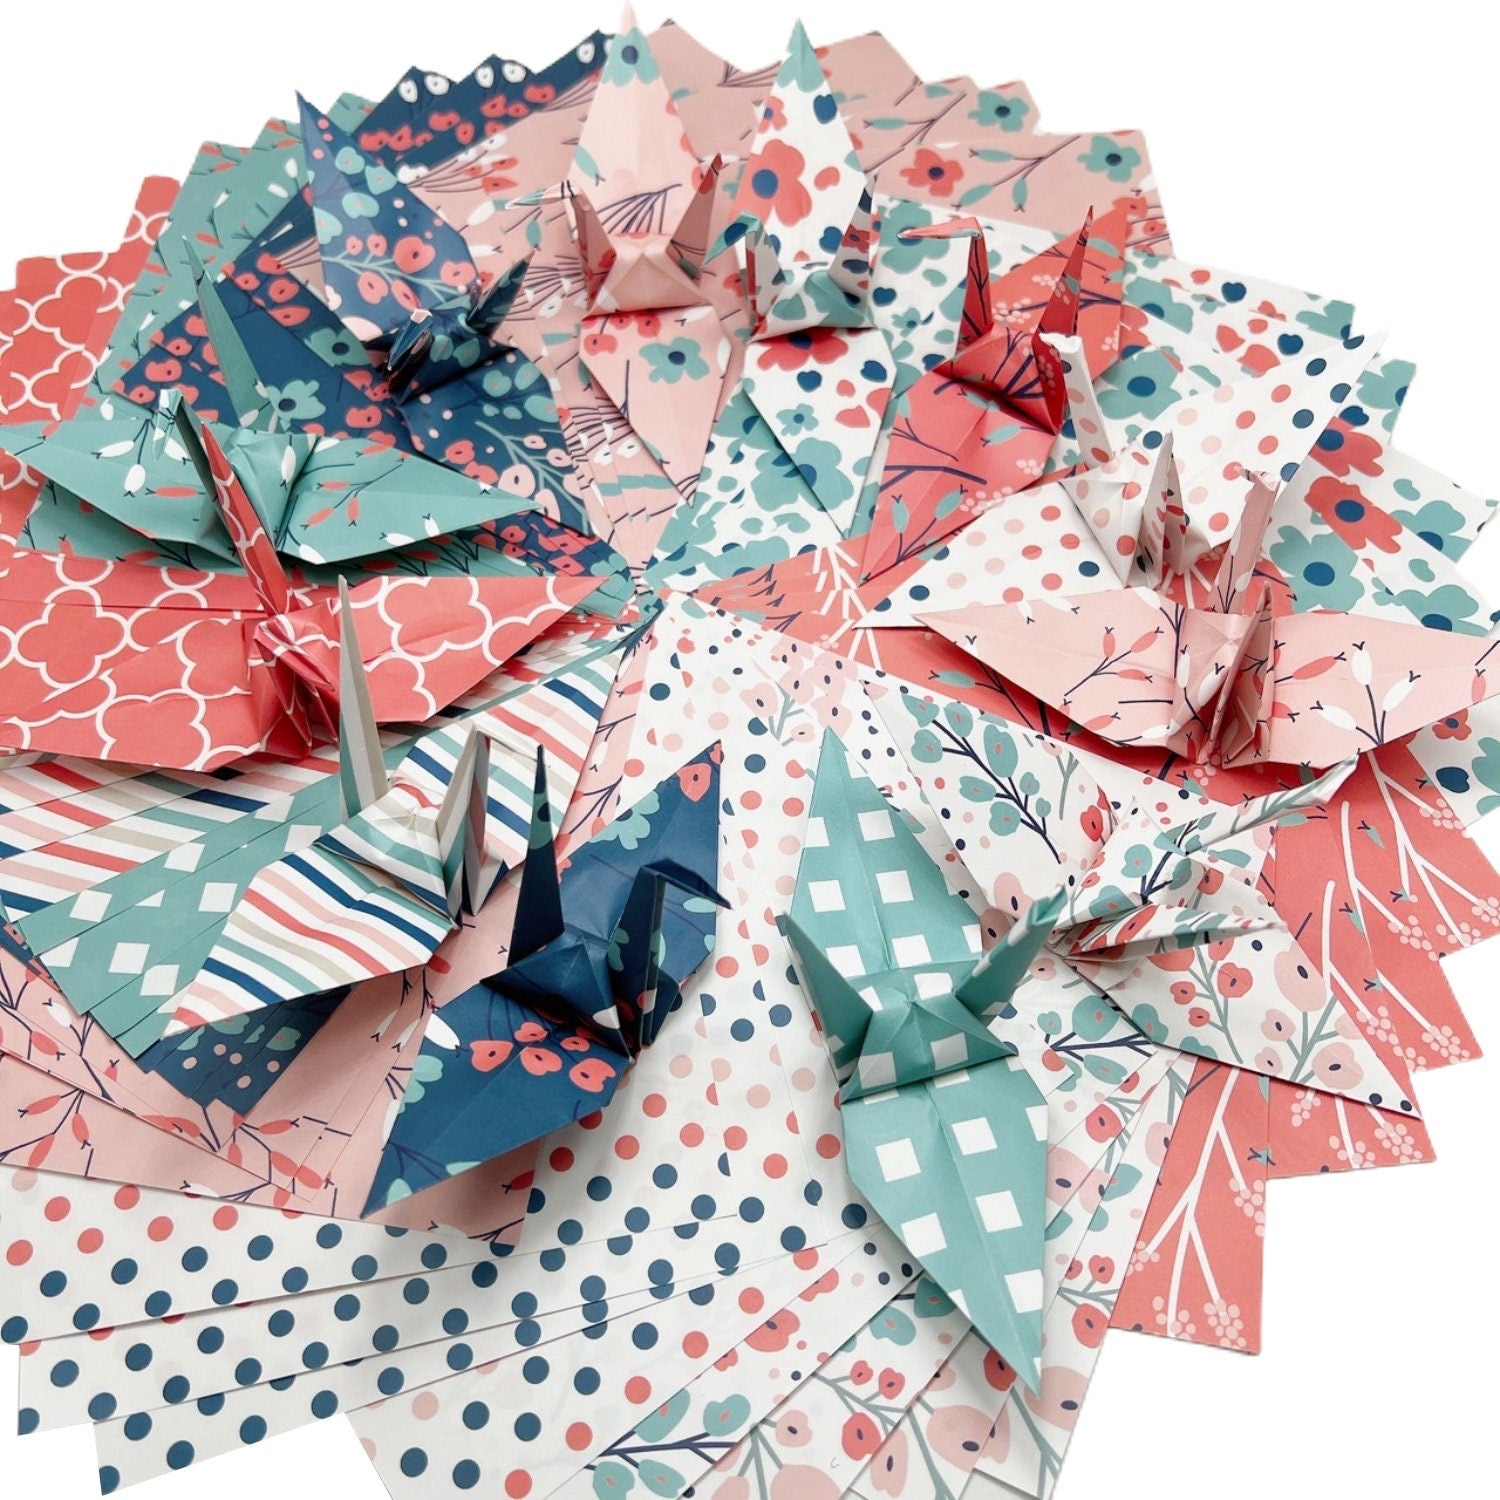 50 hojas de papel de origami estampadas - 6x6 pulgadas - una cara - para arte en papel, plegado, grullas de origami, álbumes de recortes - diseño floral